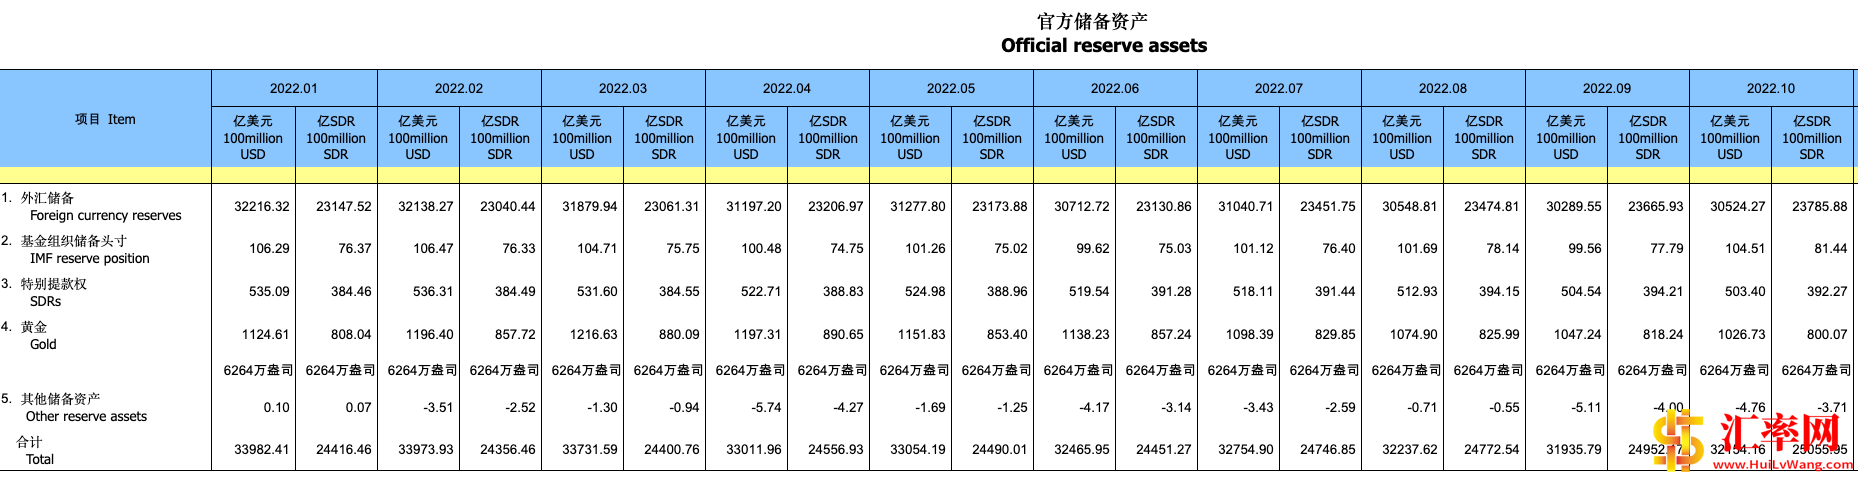 2022年10月末中国外汇储备规模为30524亿美元，增235亿美元